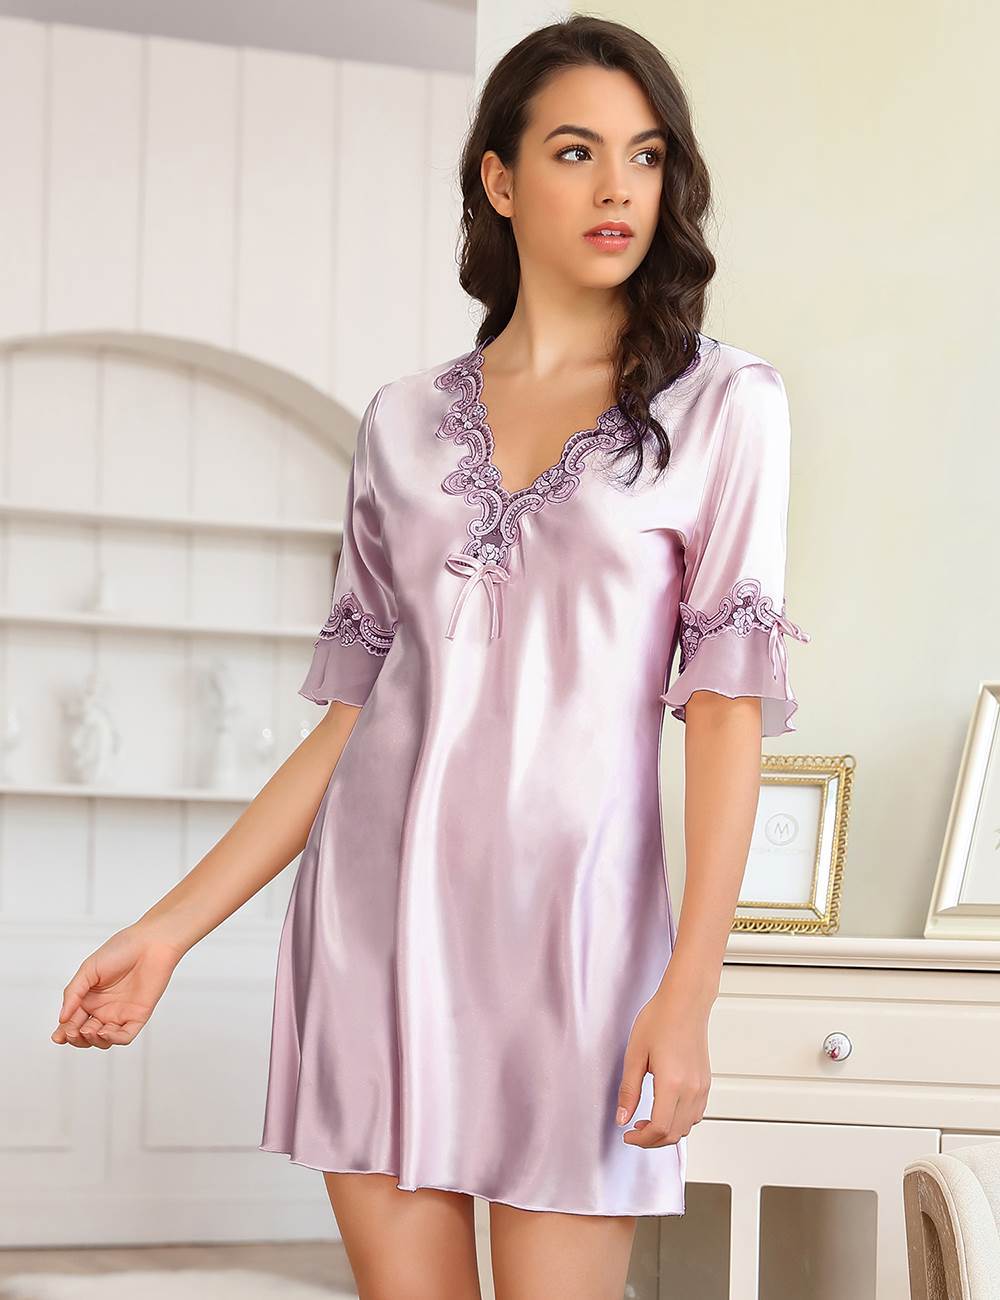 ohyeah Silky Satin Nightgowns for Women Night Dress Sleepwear